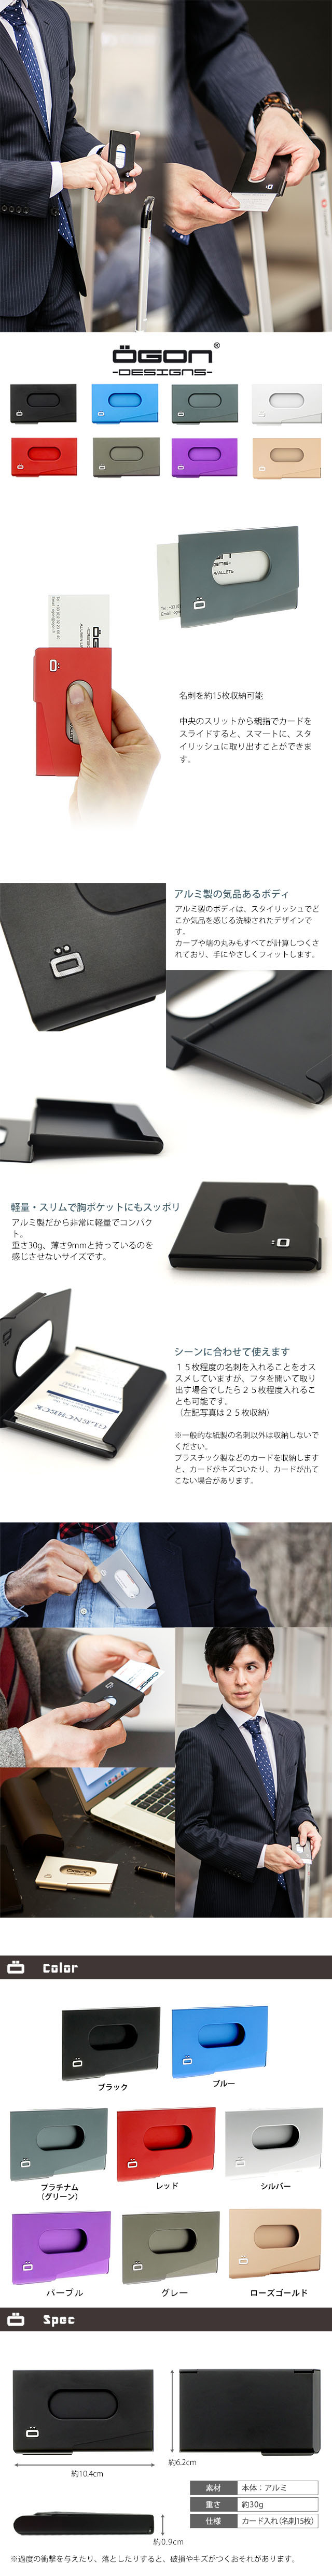 最安値 正規日本代理店 アルミワンタッチカードケース  OGON オゴン 名入れ  無料 保証対象